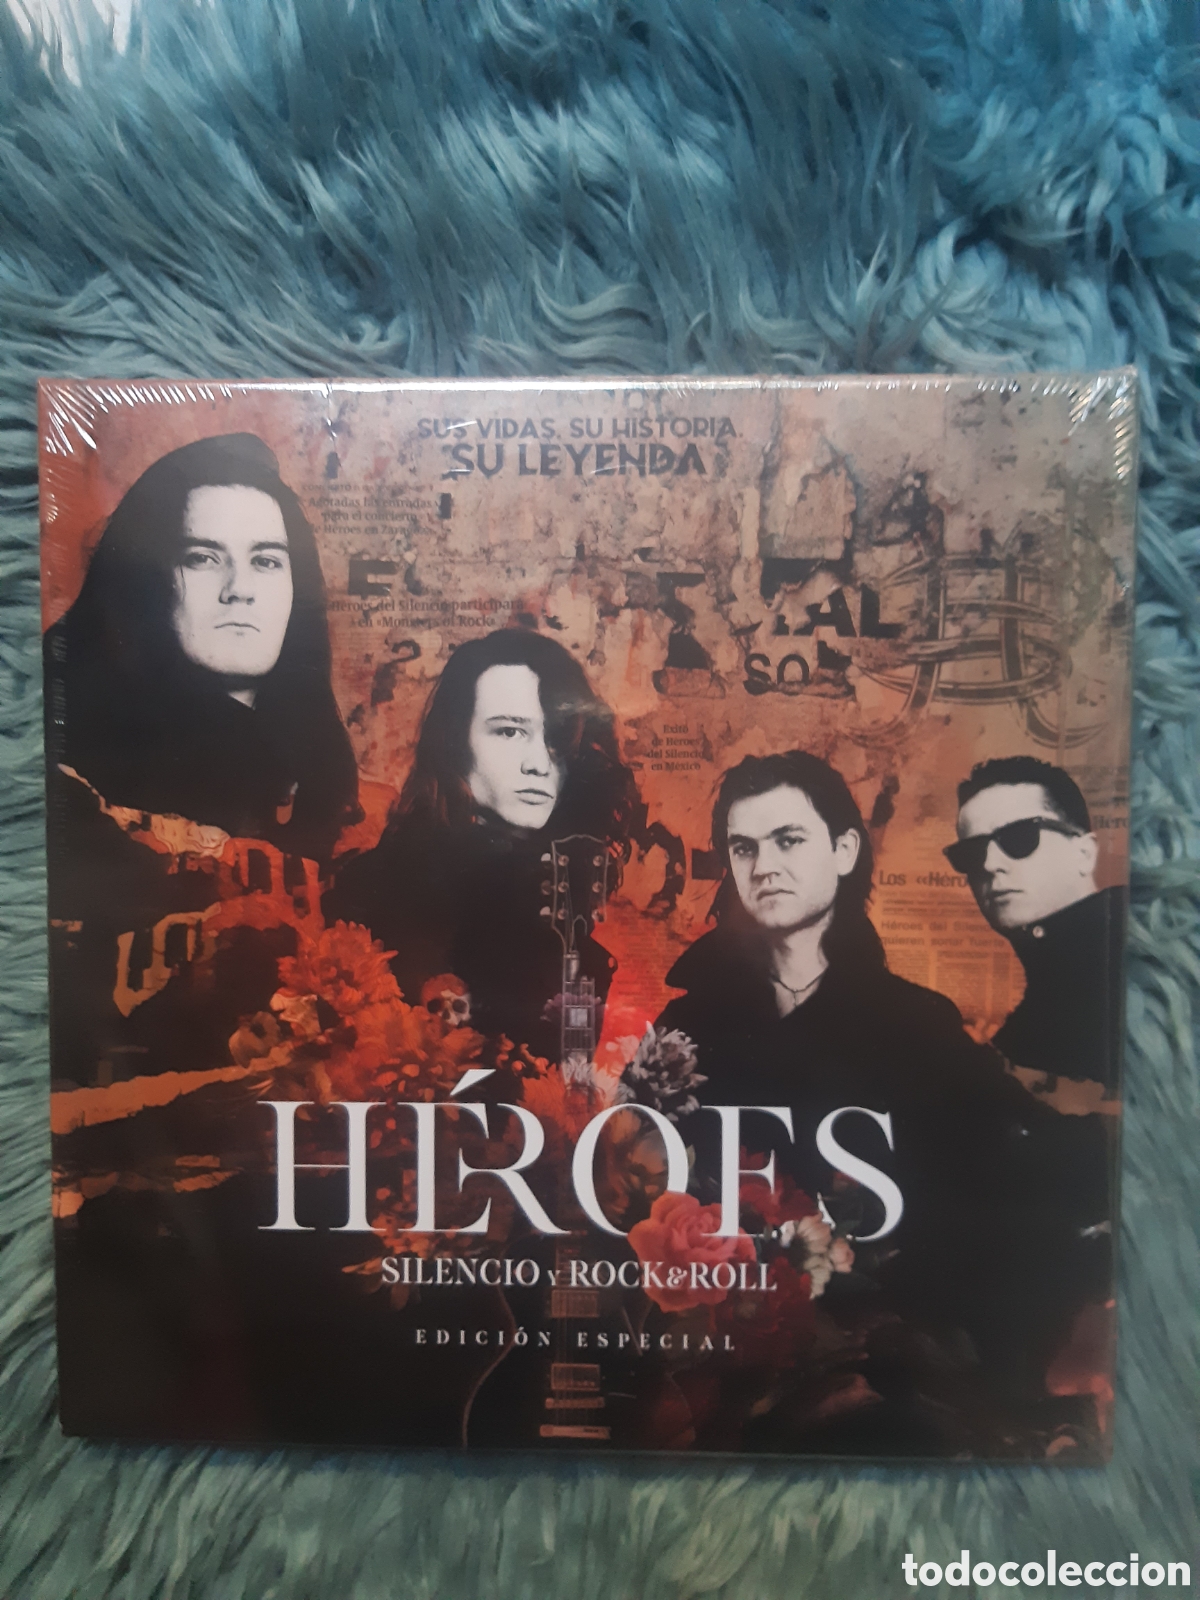 Héroes: Silencio y Rock and Roll, el documental que cuenta la historia